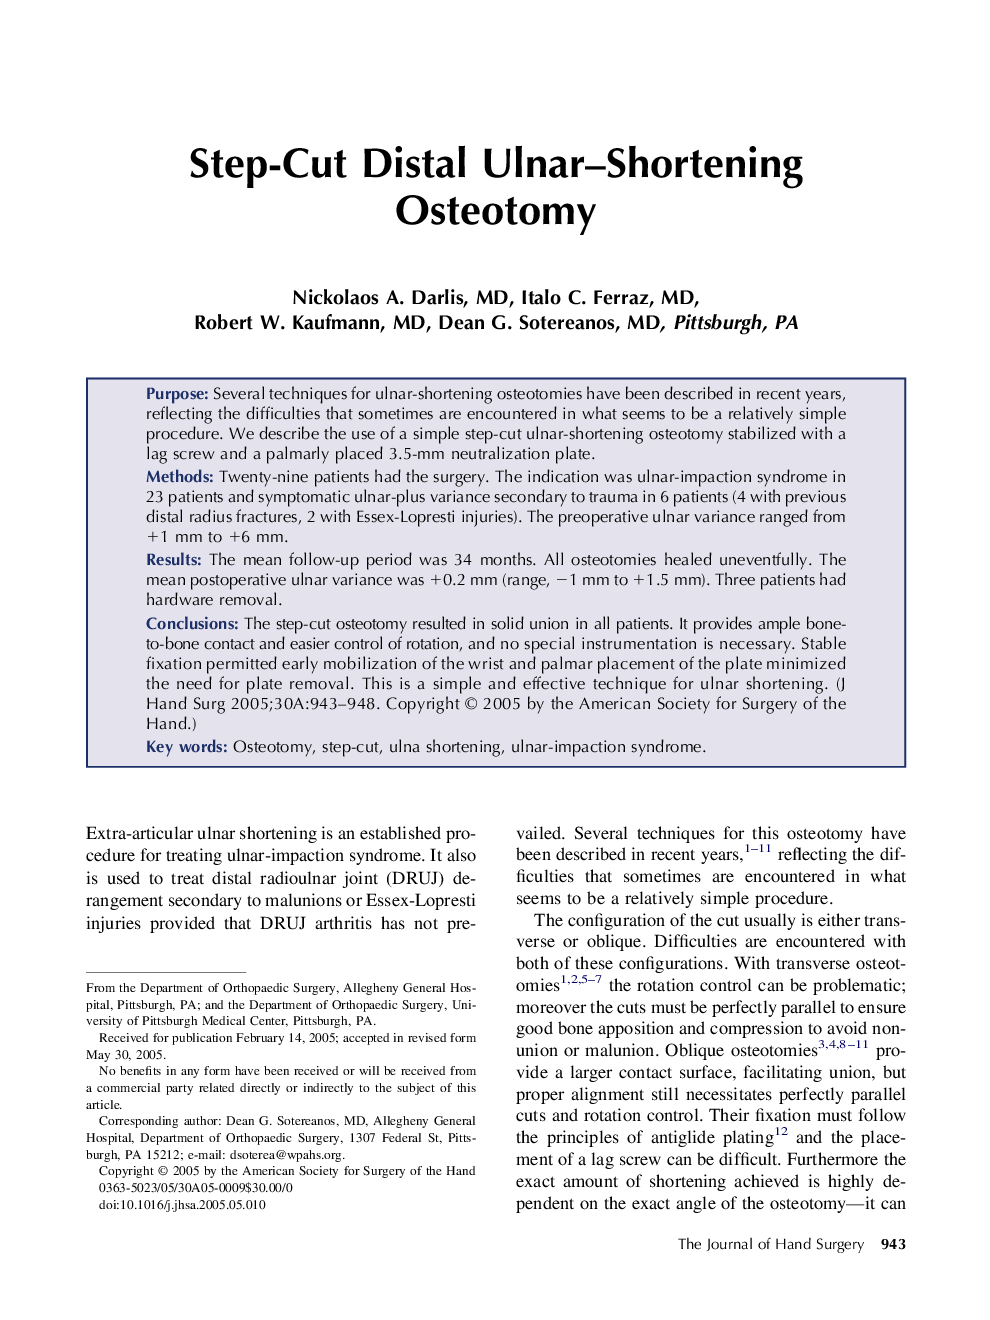 Step-Cut Distal Ulnar-Shortening Osteotomy